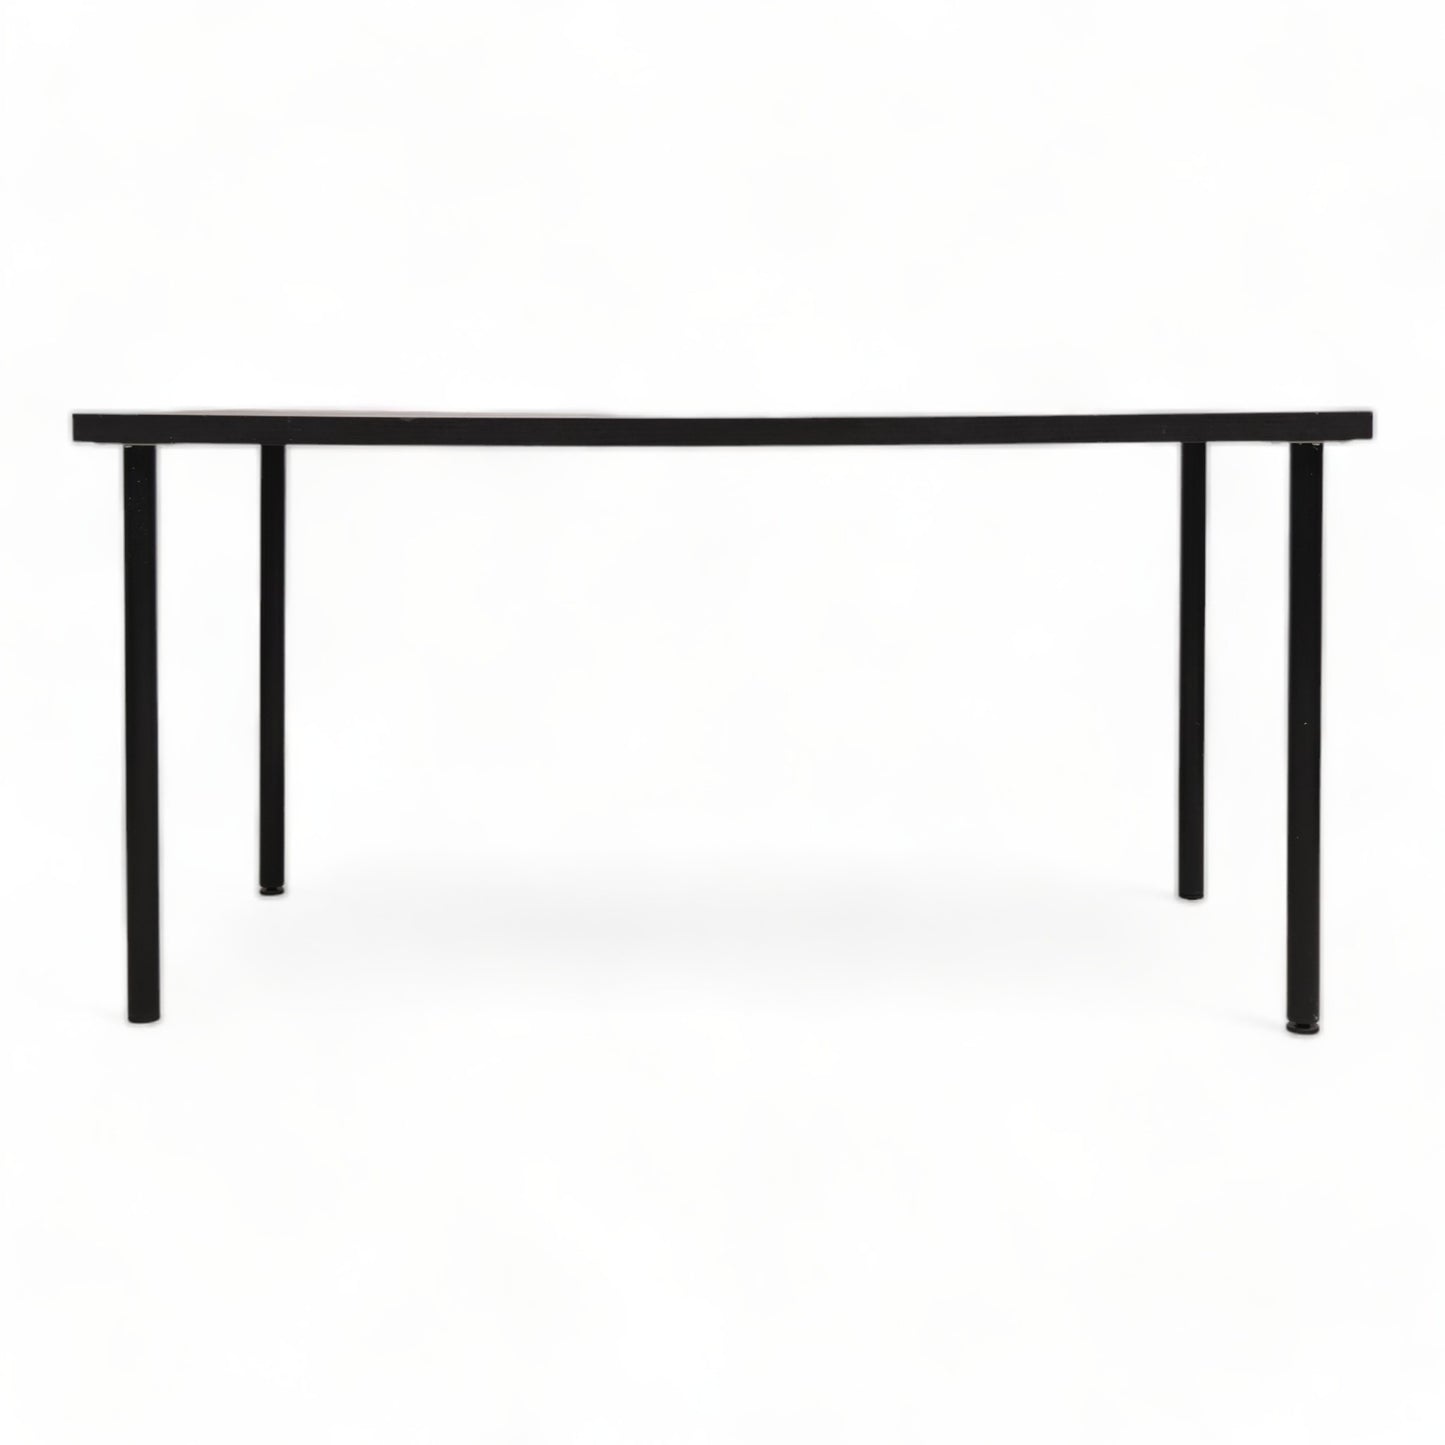 Kvalitetssikret | 150x75 cm, IKEA Linnmon skrivebord